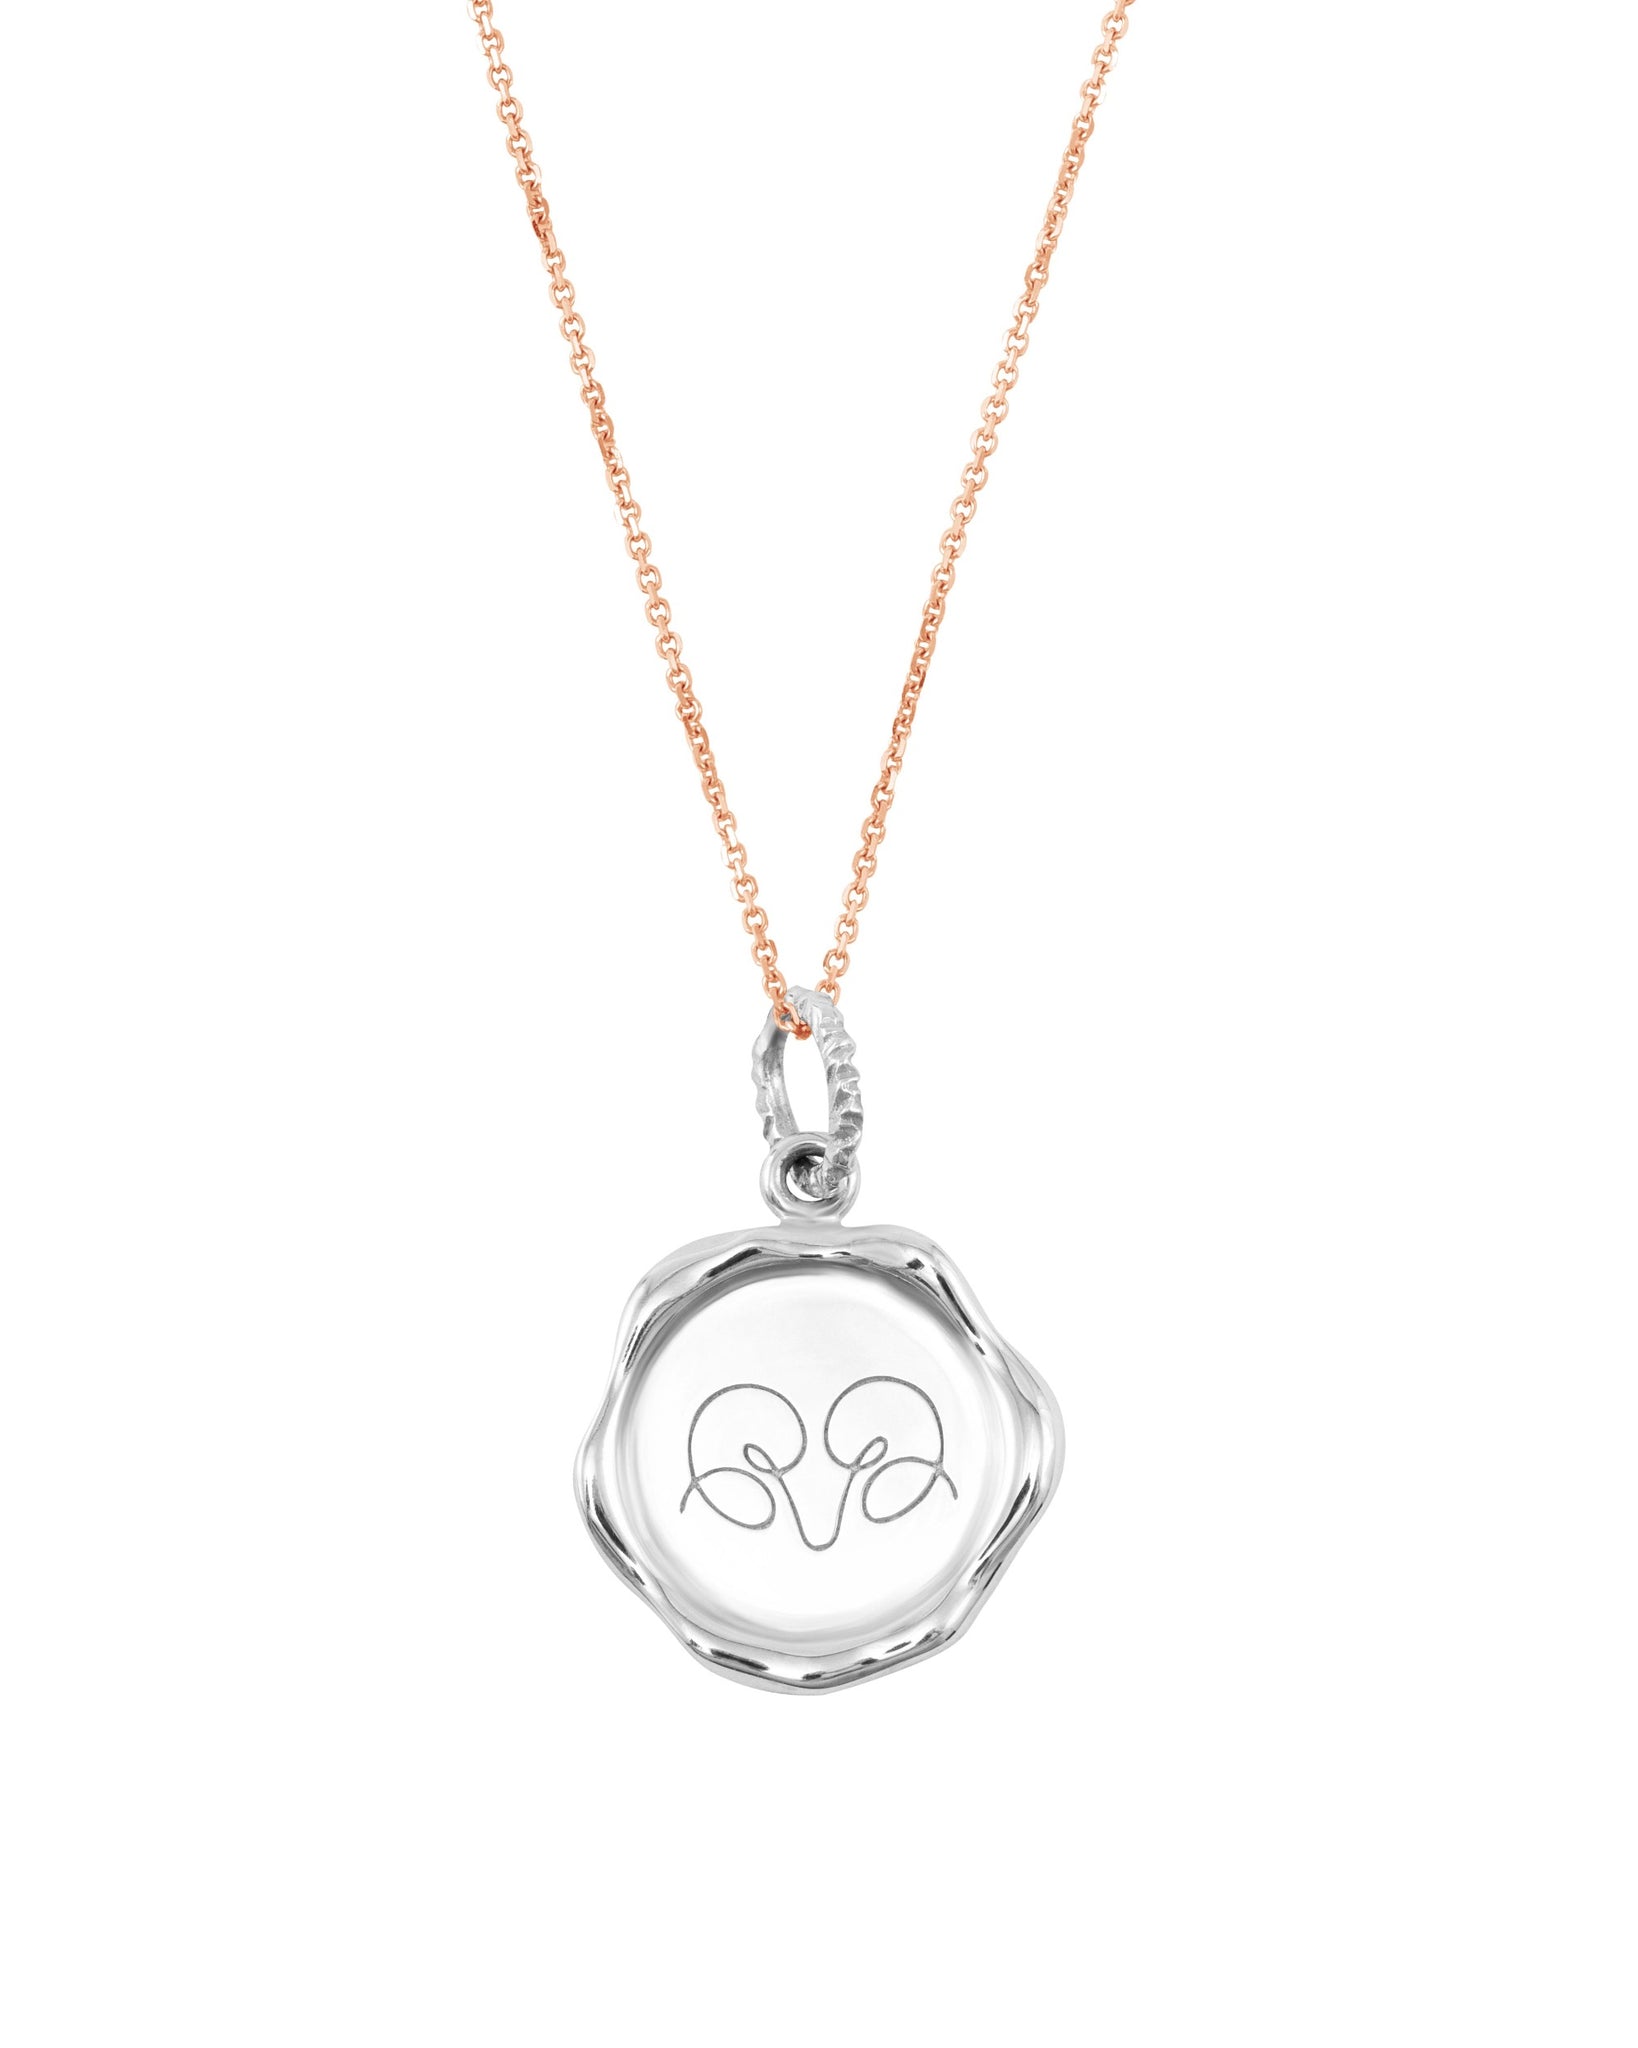 Zodiac Aries necklace